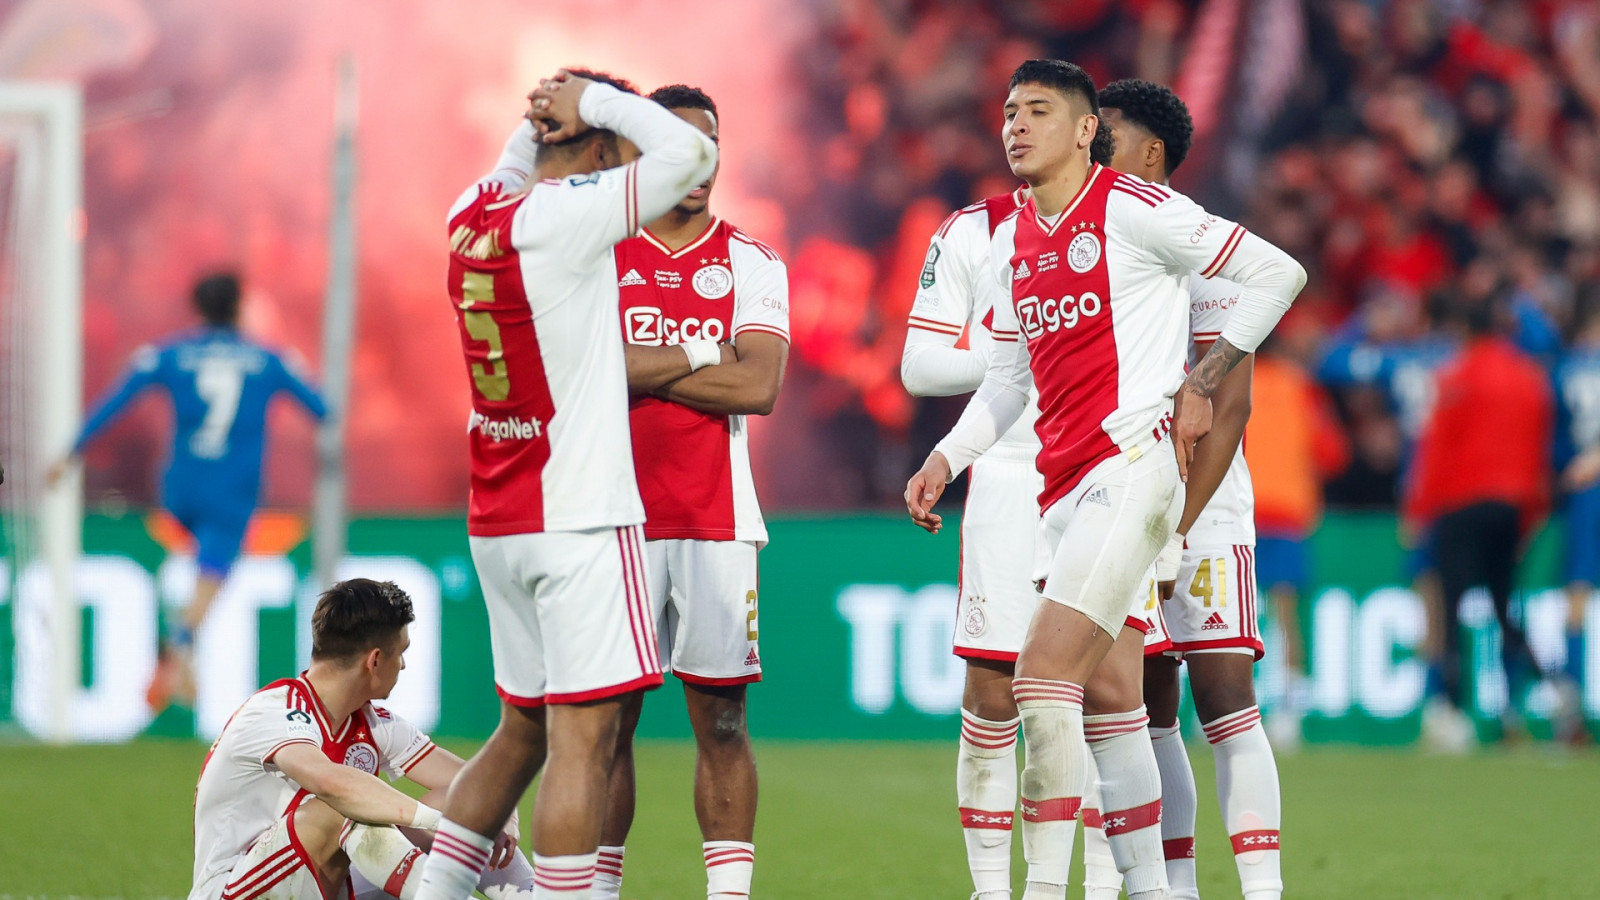 PSV wint na strafschoppen van Ajax in bekerfinale vol irritaties en  opstootjes